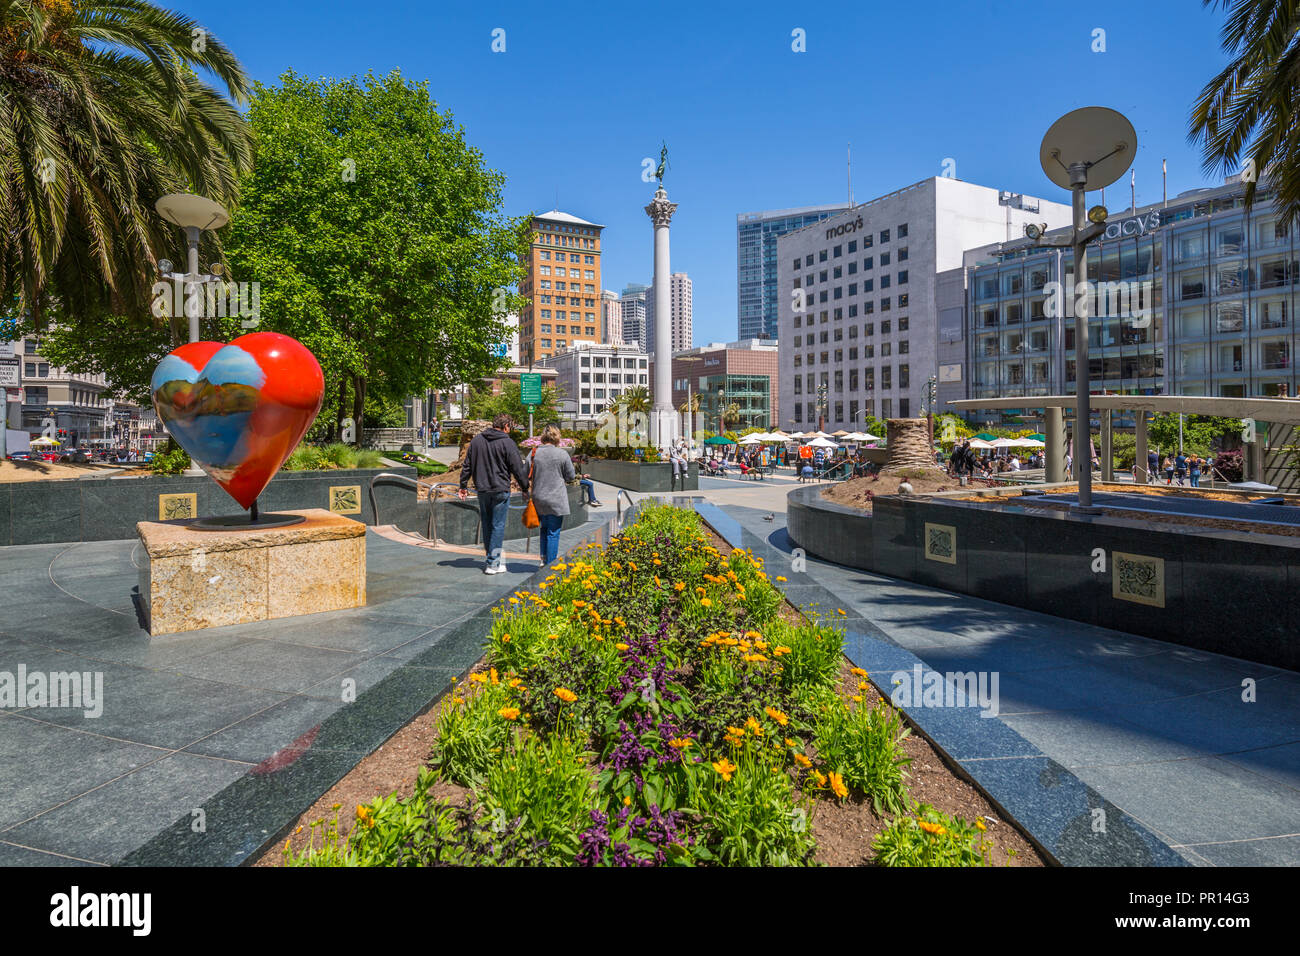 Blick auf die Gebäude und Besucher im Union Square, San Francisco, Kalifornien, Vereinigte Staaten von Amerika, Nordamerika Stockfoto